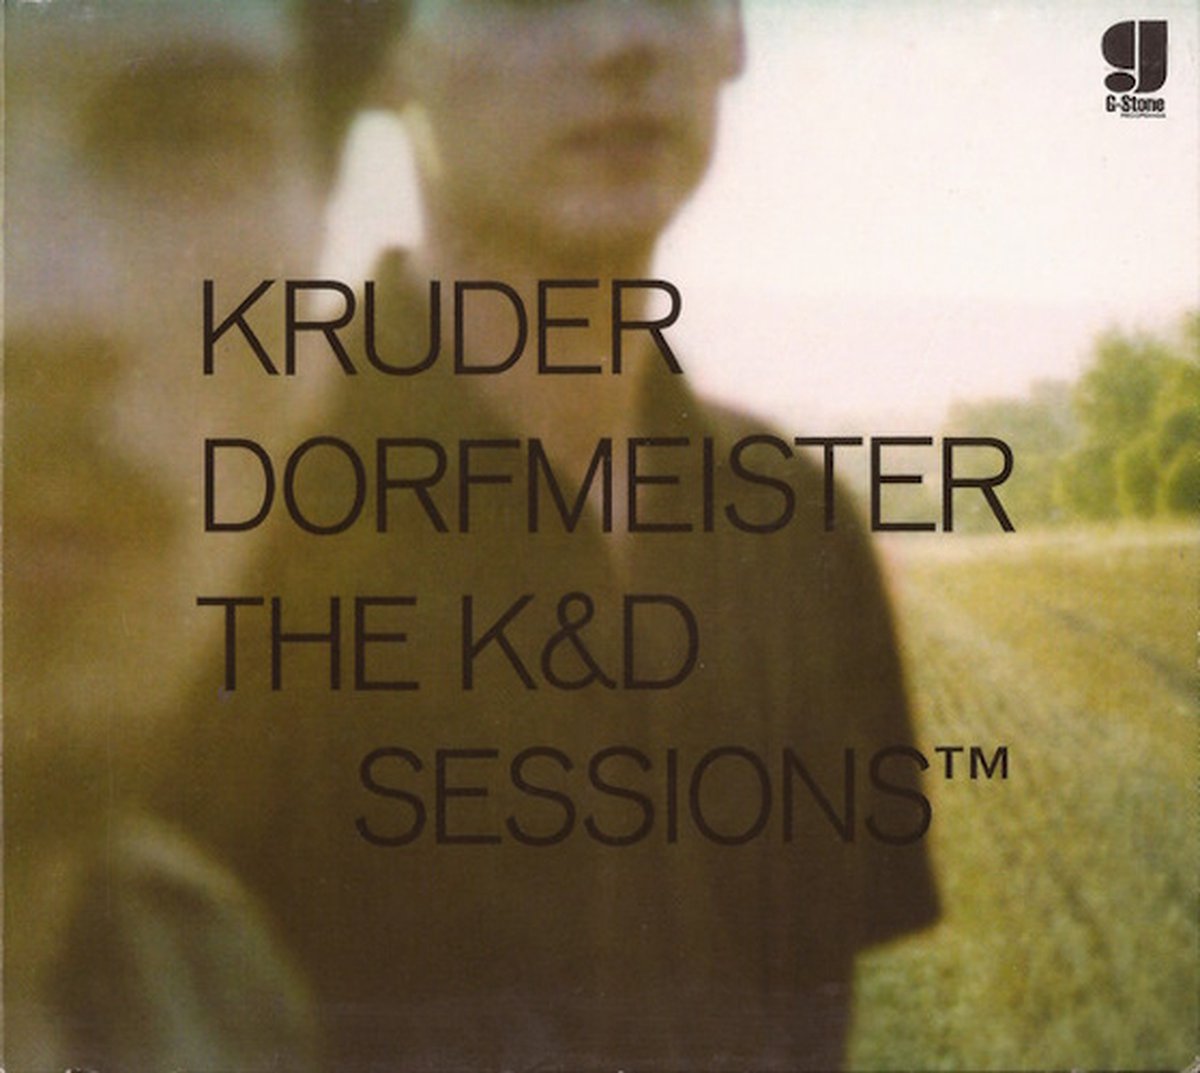 Kruder Dorfmeister: The K&D Sessions - Kruder & Dorfmeister